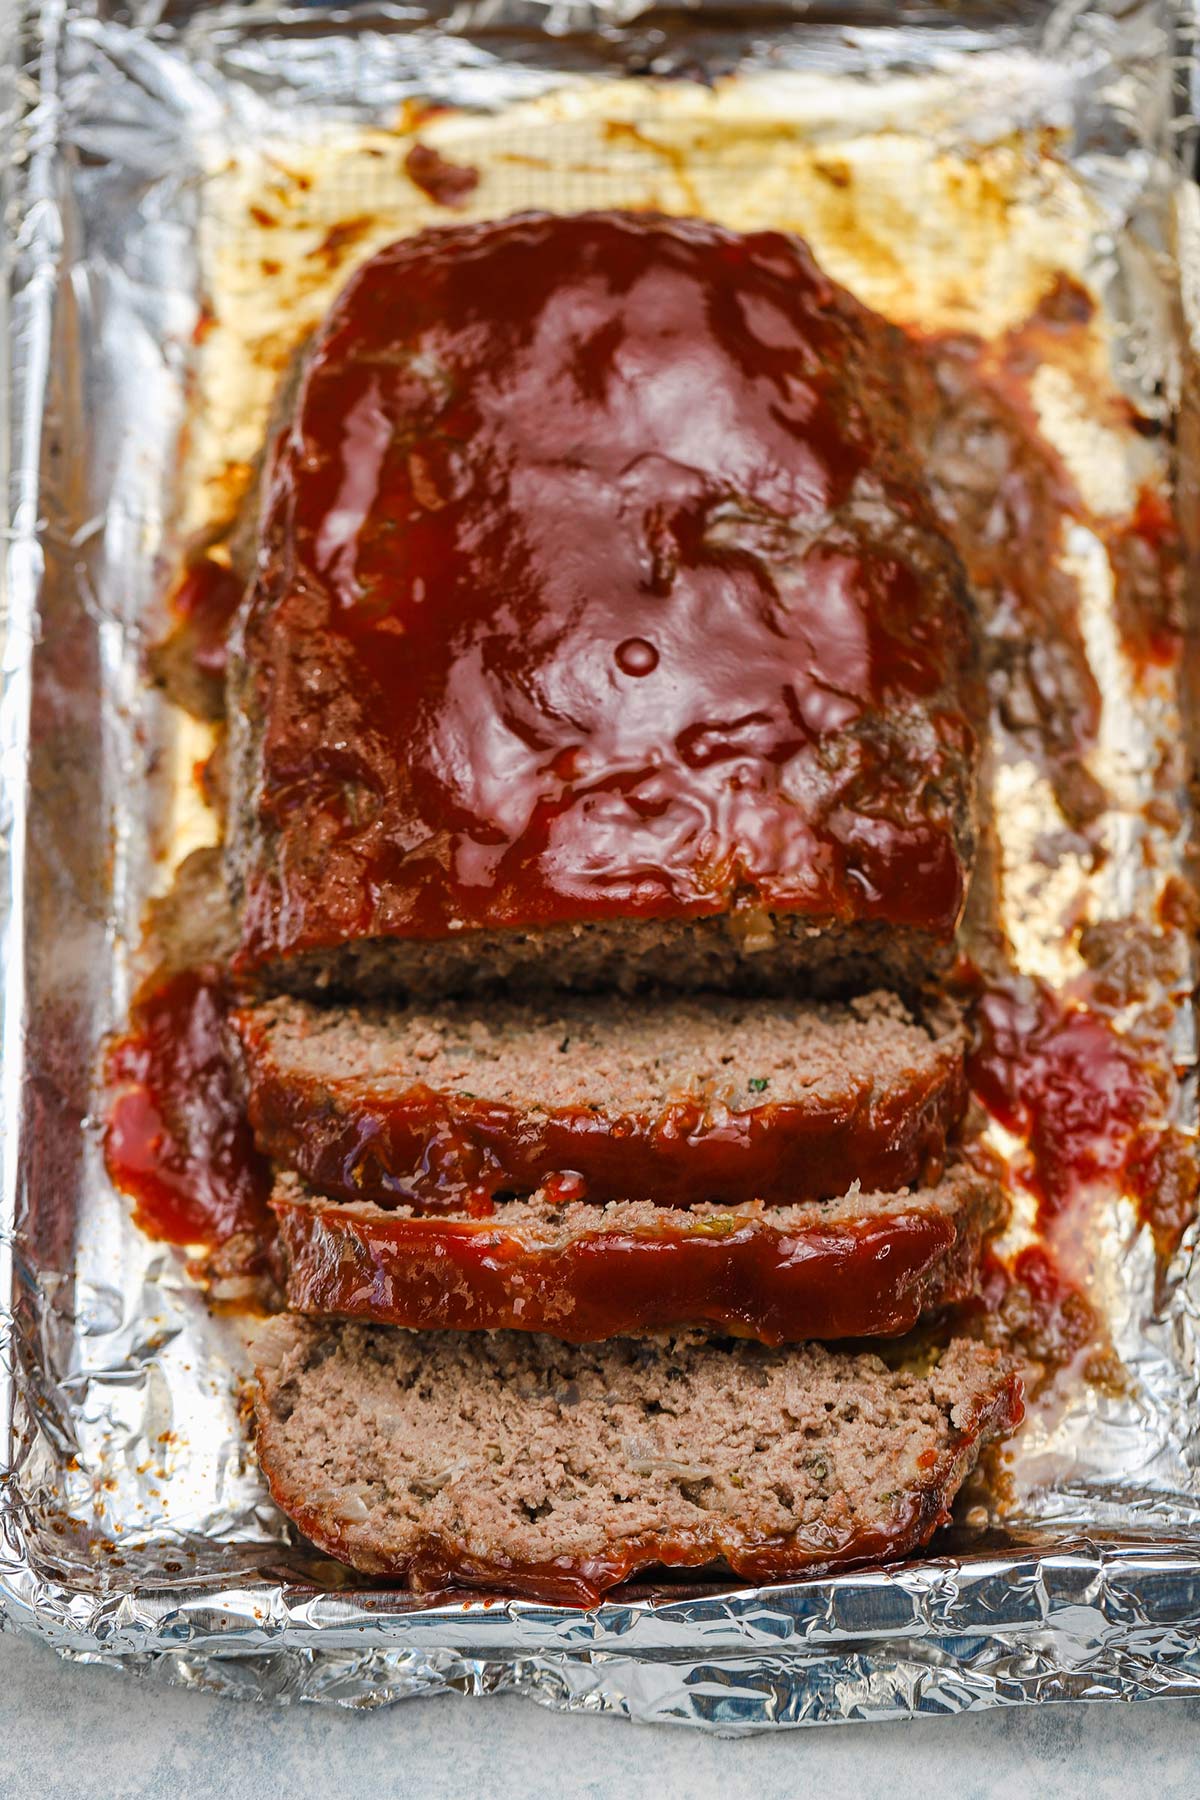 Overhead image of sliced meatloaf after baking on an aluminum foil lined baking sheet.